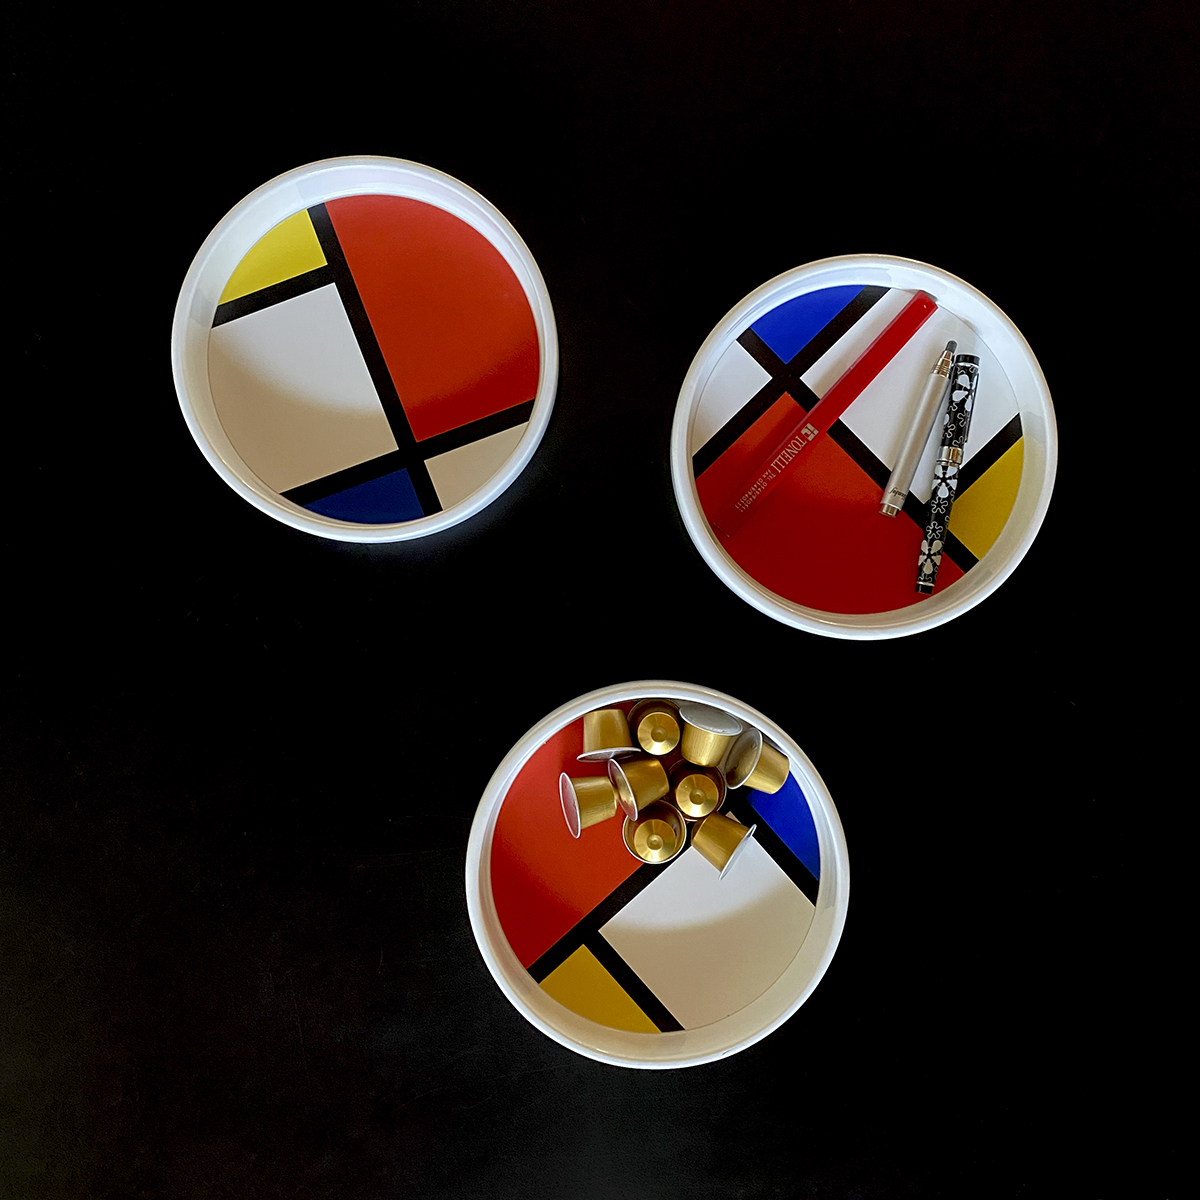 svuotatasche multiuso: portapenne, portacapsule, rotondo e decorato in uno stile geometrico minimal ispirato a Piet Mondrian